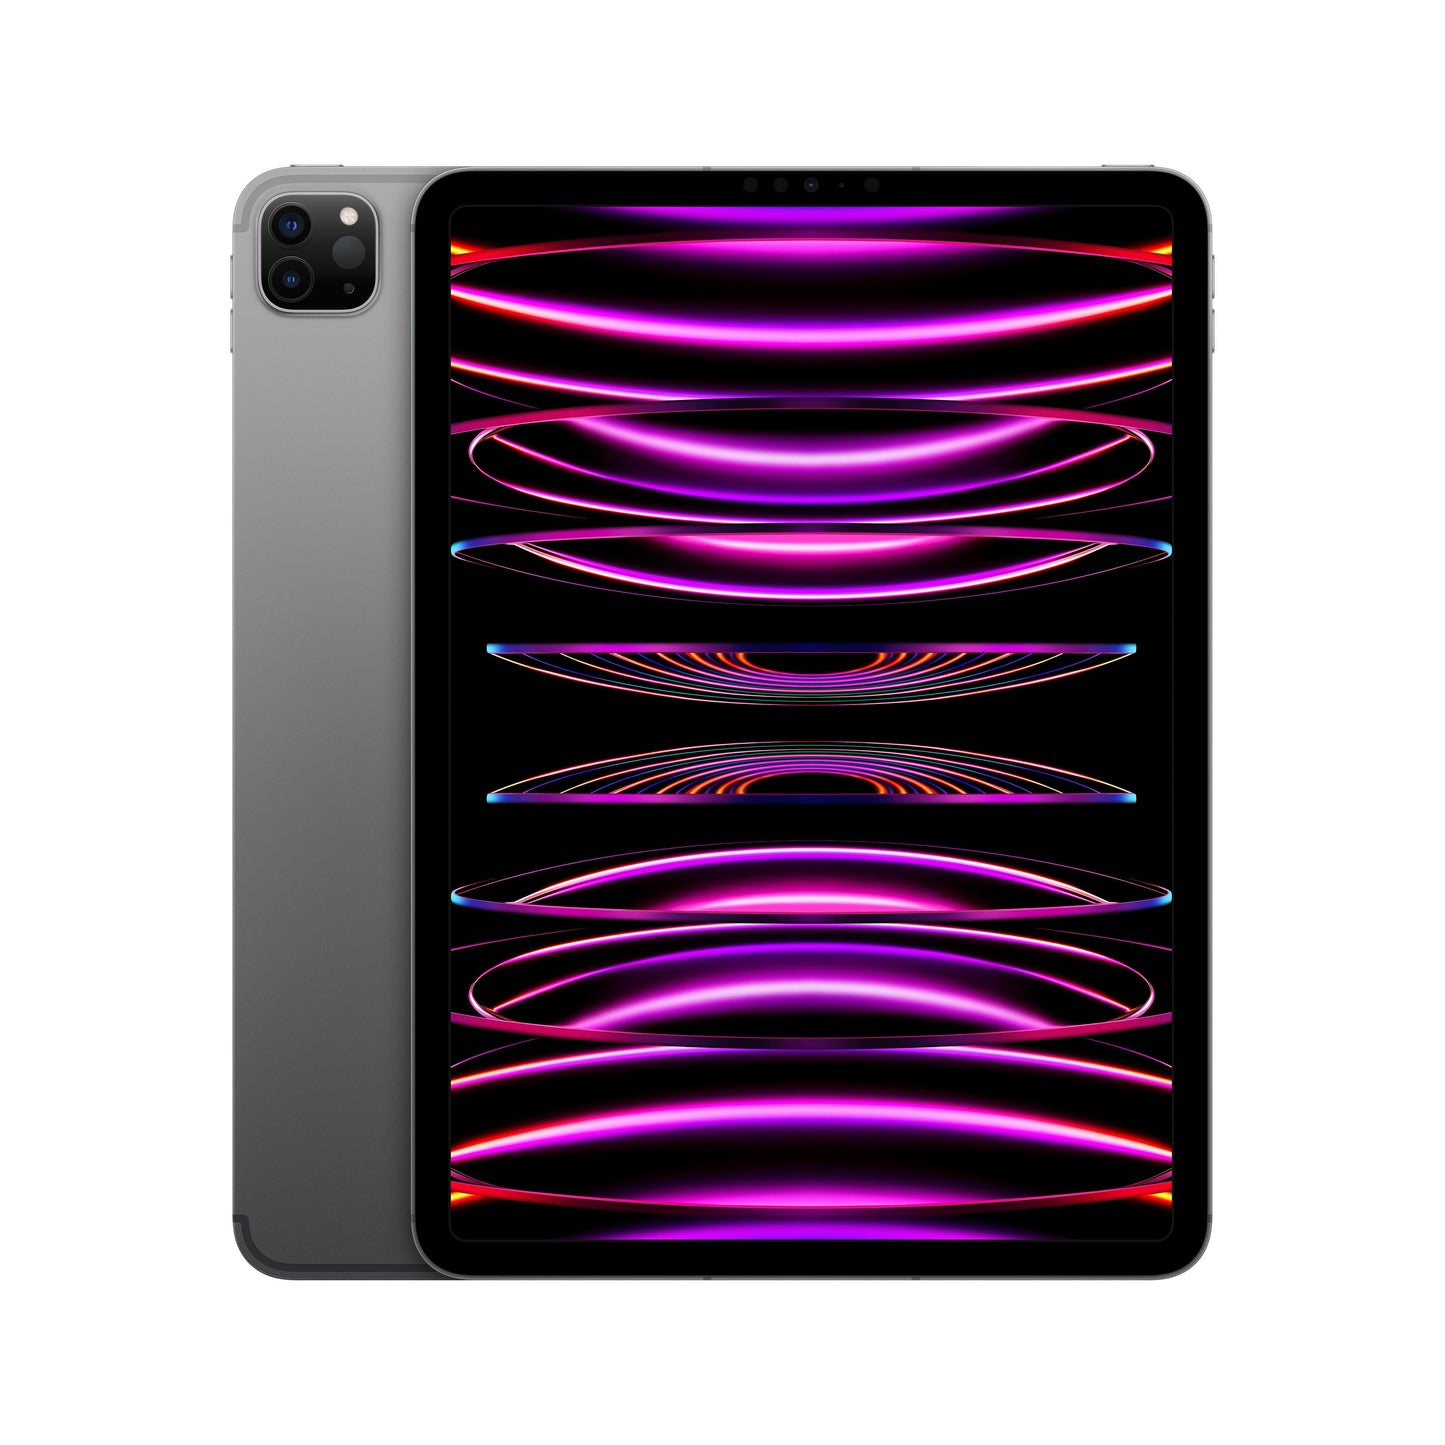 11-inch iPad Pro (4th Gen) Wi-Fi + Cellular 128GB - Space Grey